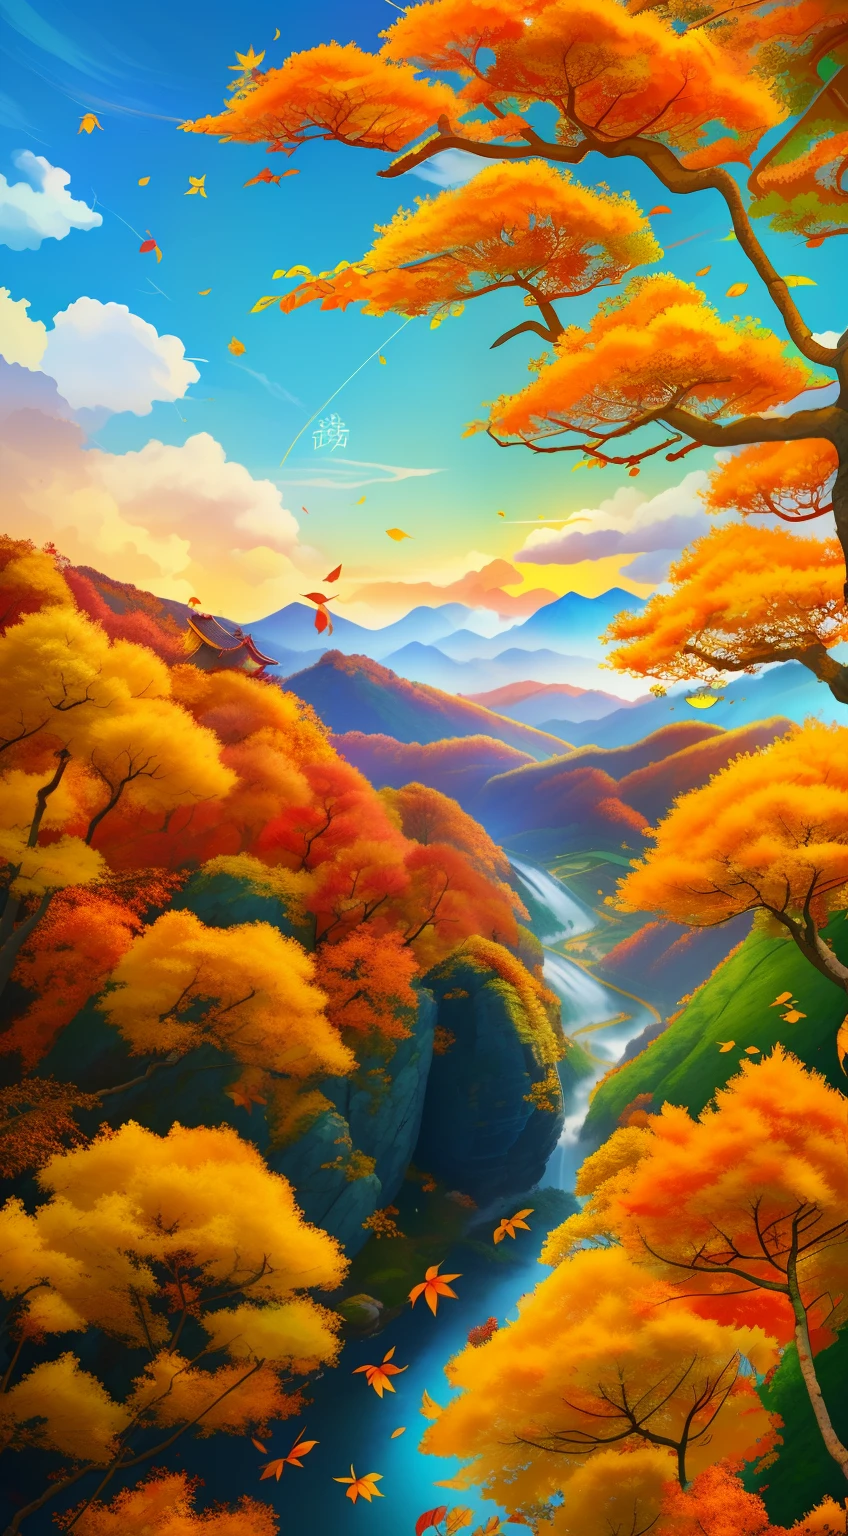 秋天的，中国节气海报，秋天的，黄叶，落叶，叶子，秋季景观，二十节气，中国传统节气，秋天的，杰作、8千 ，远景，温暖的秋日，蓝天白云，高山溪流